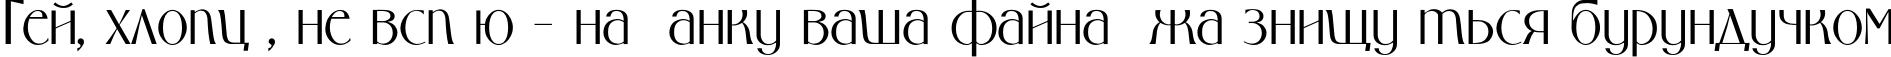 Пример написания шрифтом MiddlLight TYGRA текста на украинском